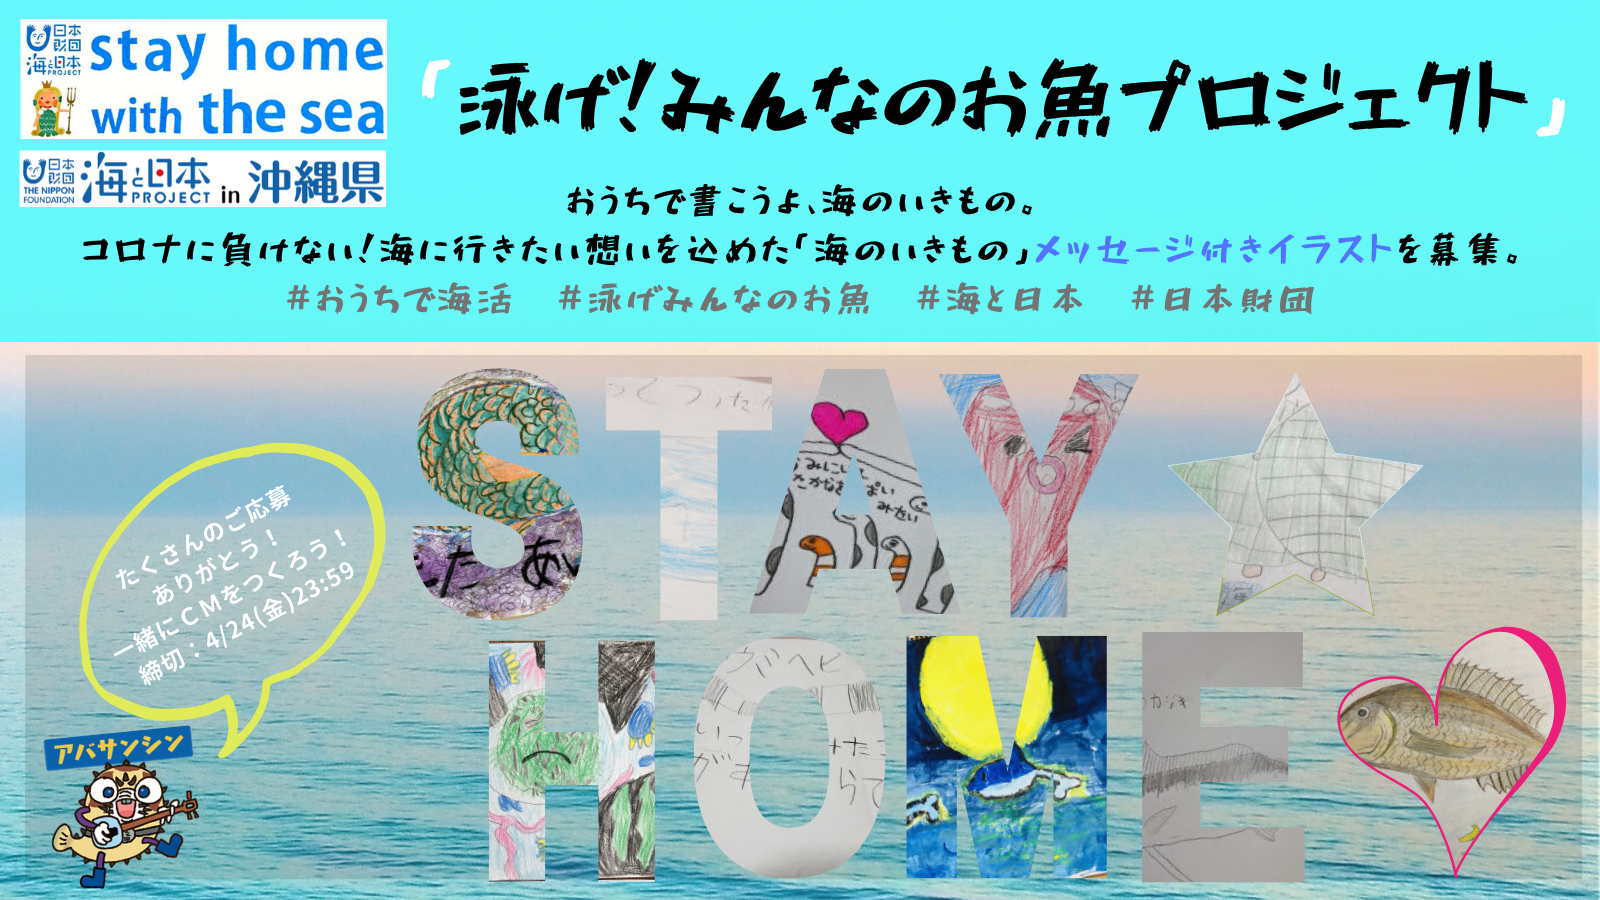 4 24 金 締切 泳げ 海のお魚イラスト募集 海と日本project In 沖縄県 海do宝